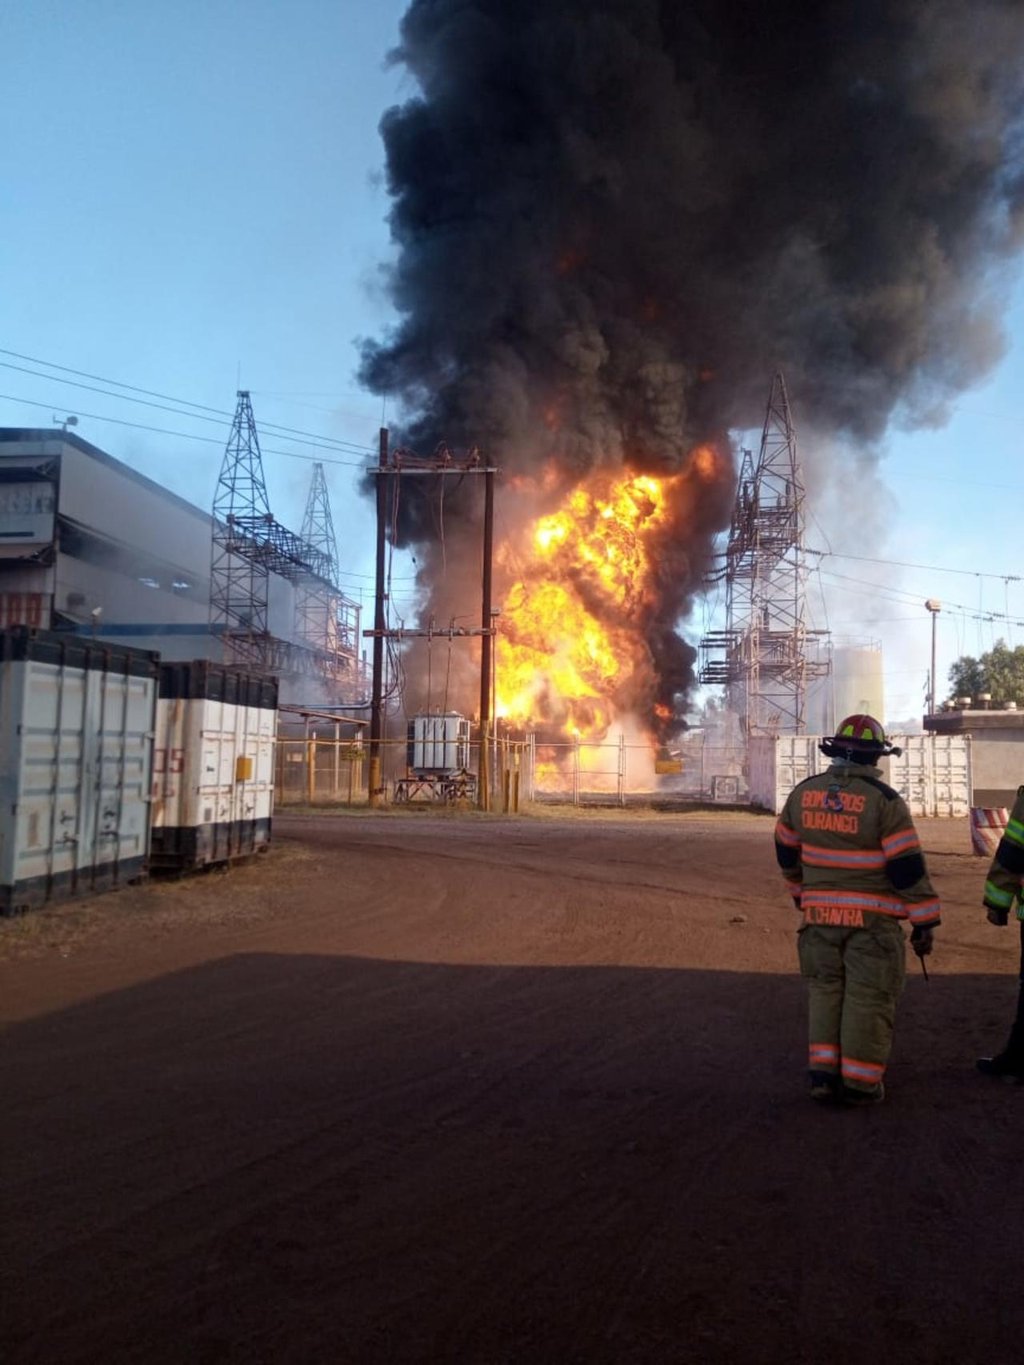 Aparente explosión de transformador causó incendio en Subestación de CFE